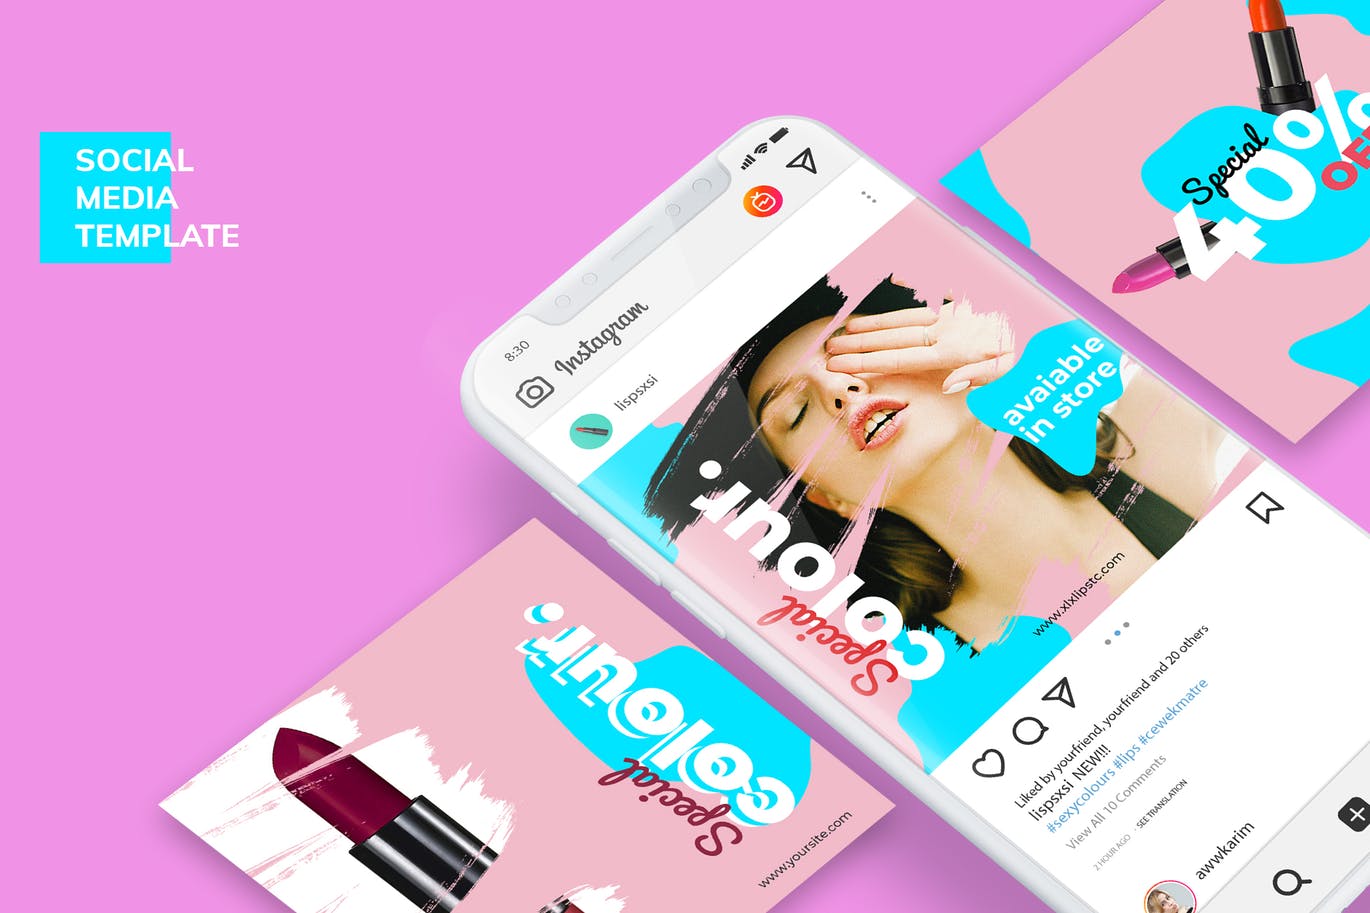 美容护肤品牌营销社交自媒体设计素材 Social Media Kit Cosmetics插图